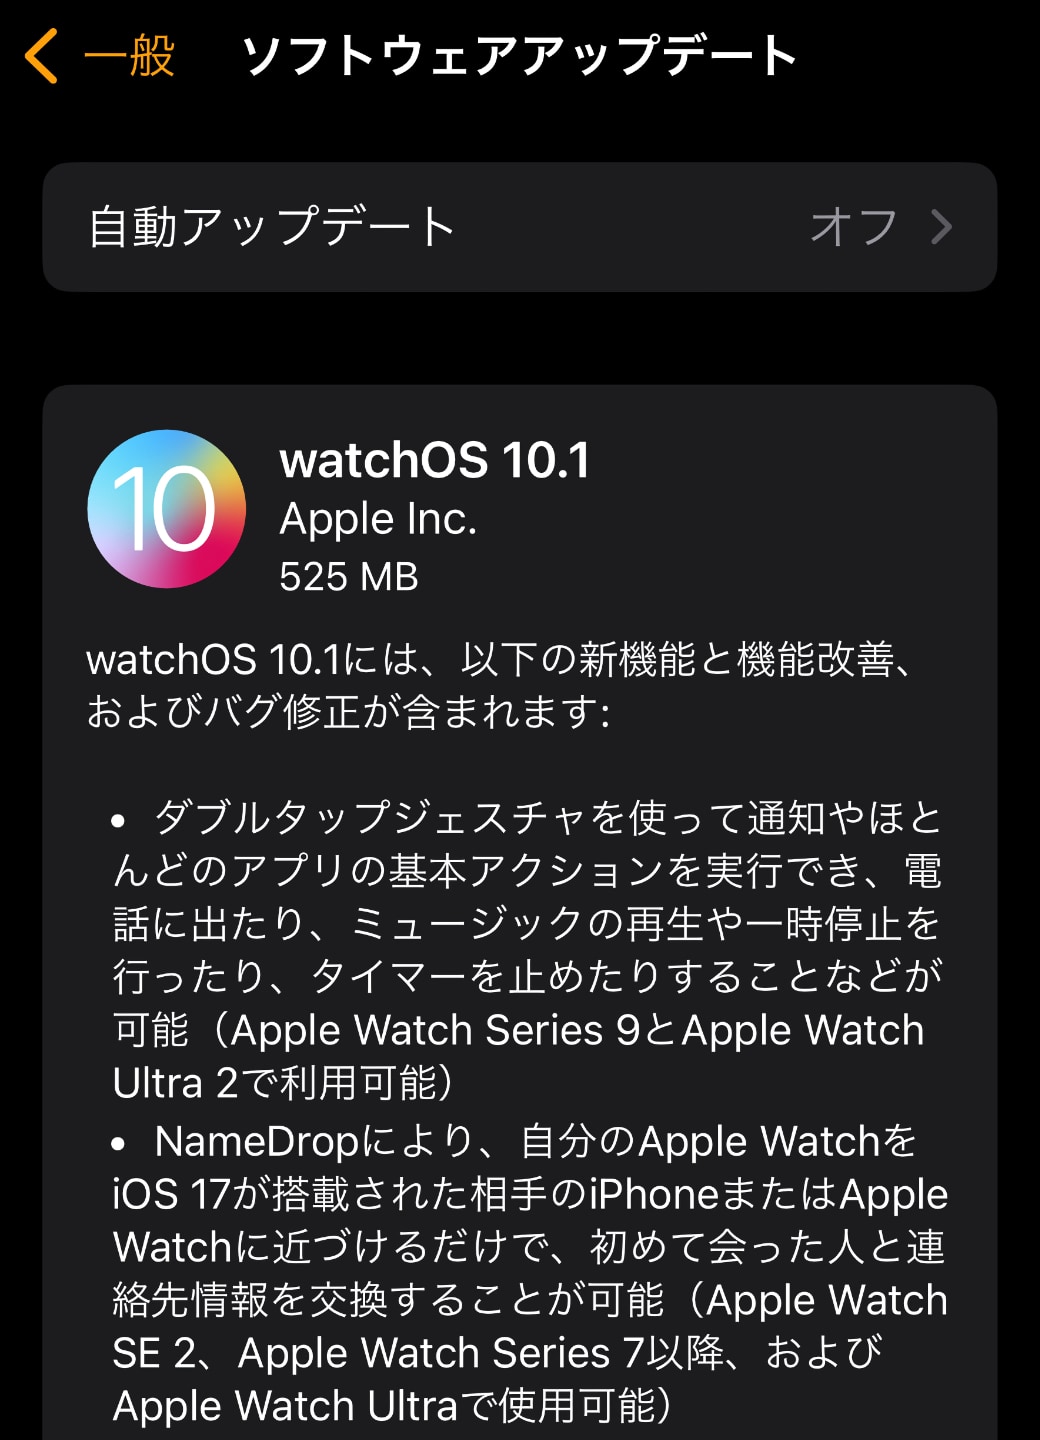 watchOS 10.1